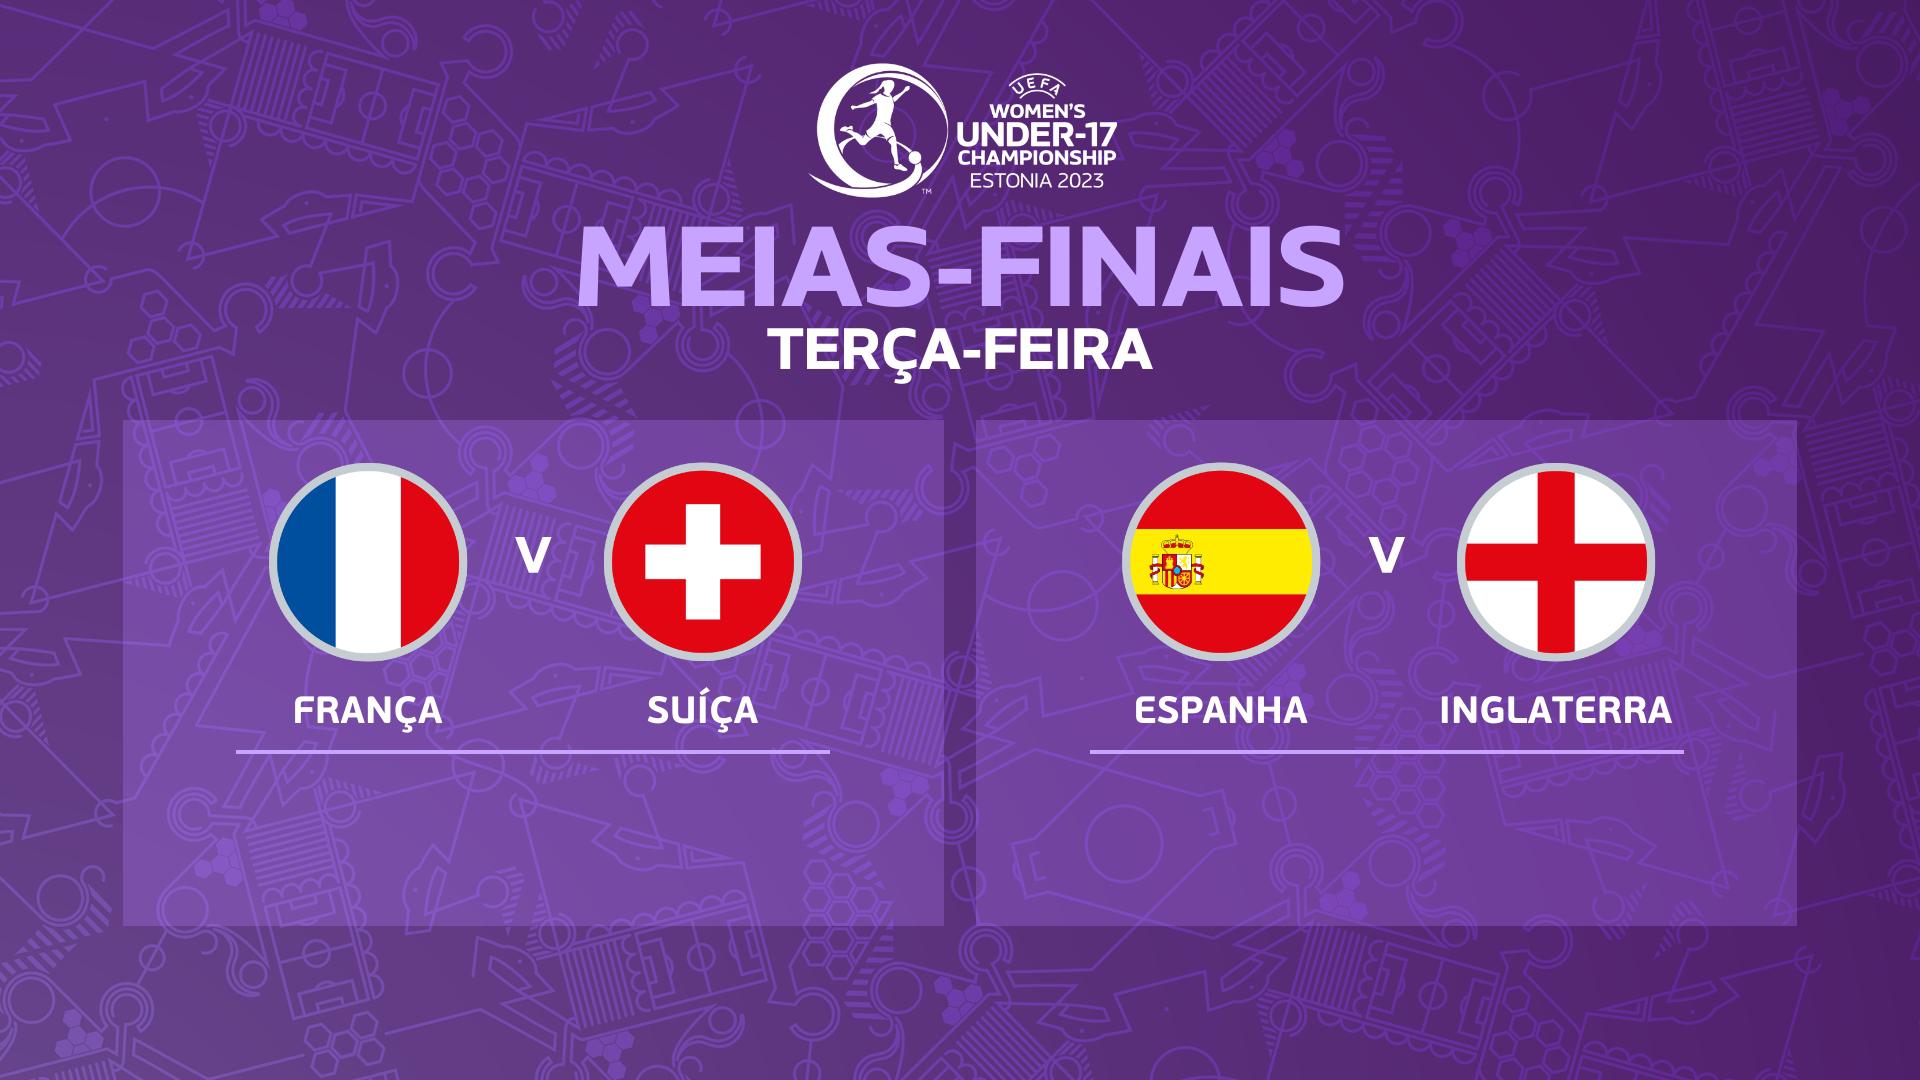 Conoce a las semifinalistas del Campeonato de Europa Sub-17 femenino de 2023: Francia – Suiza, España – Inglaterra |  Chicas europeas U17